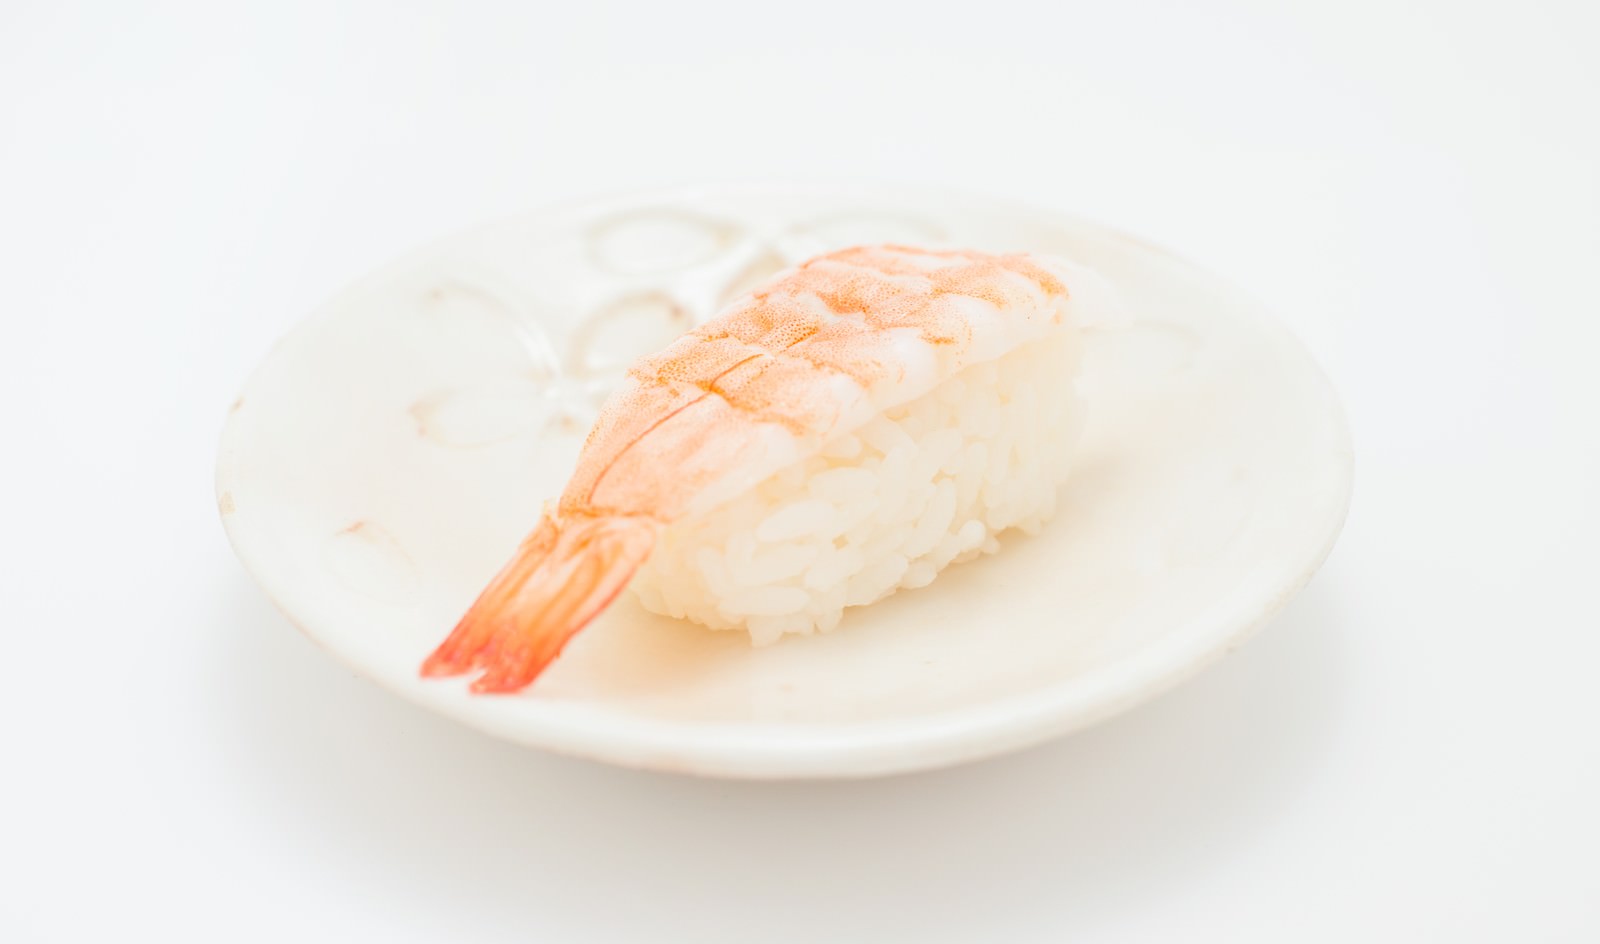 海老の寿司 一貫 の写真 画像 フリー素材 ぱくたそ